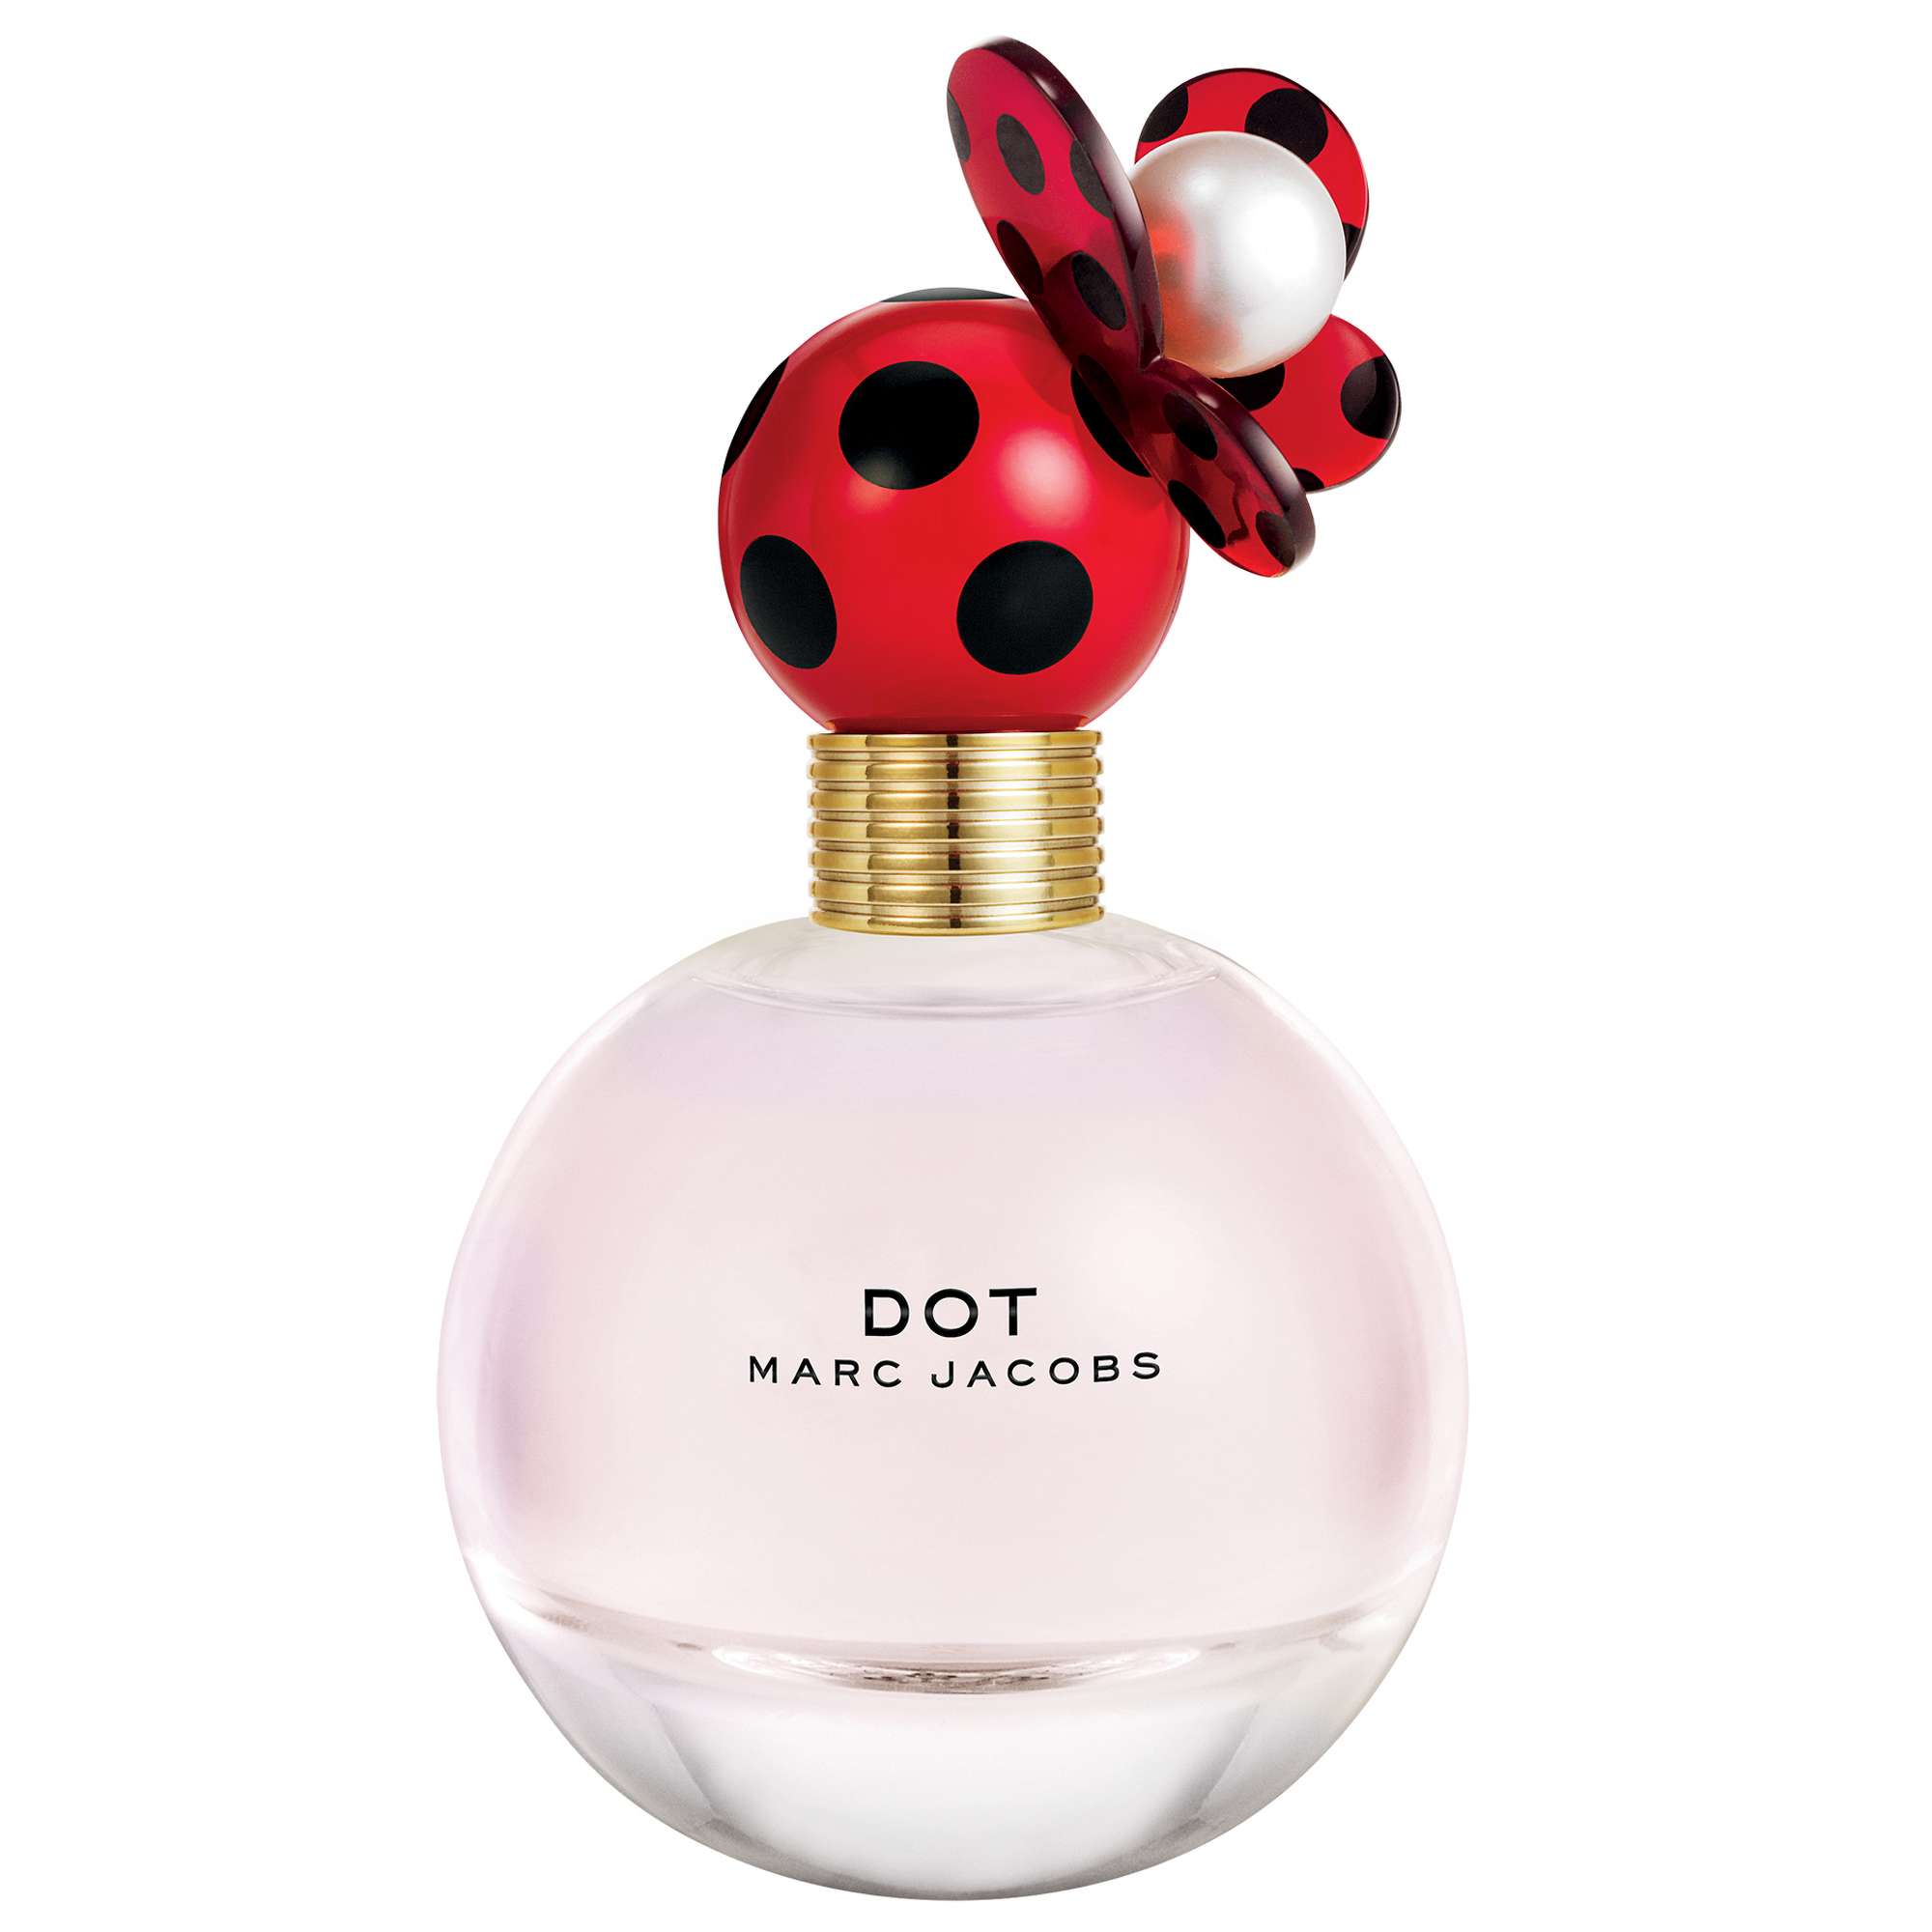 Photos - Women's Fragrance Marc Jacobs Dot Eau de Parfum 100ml 